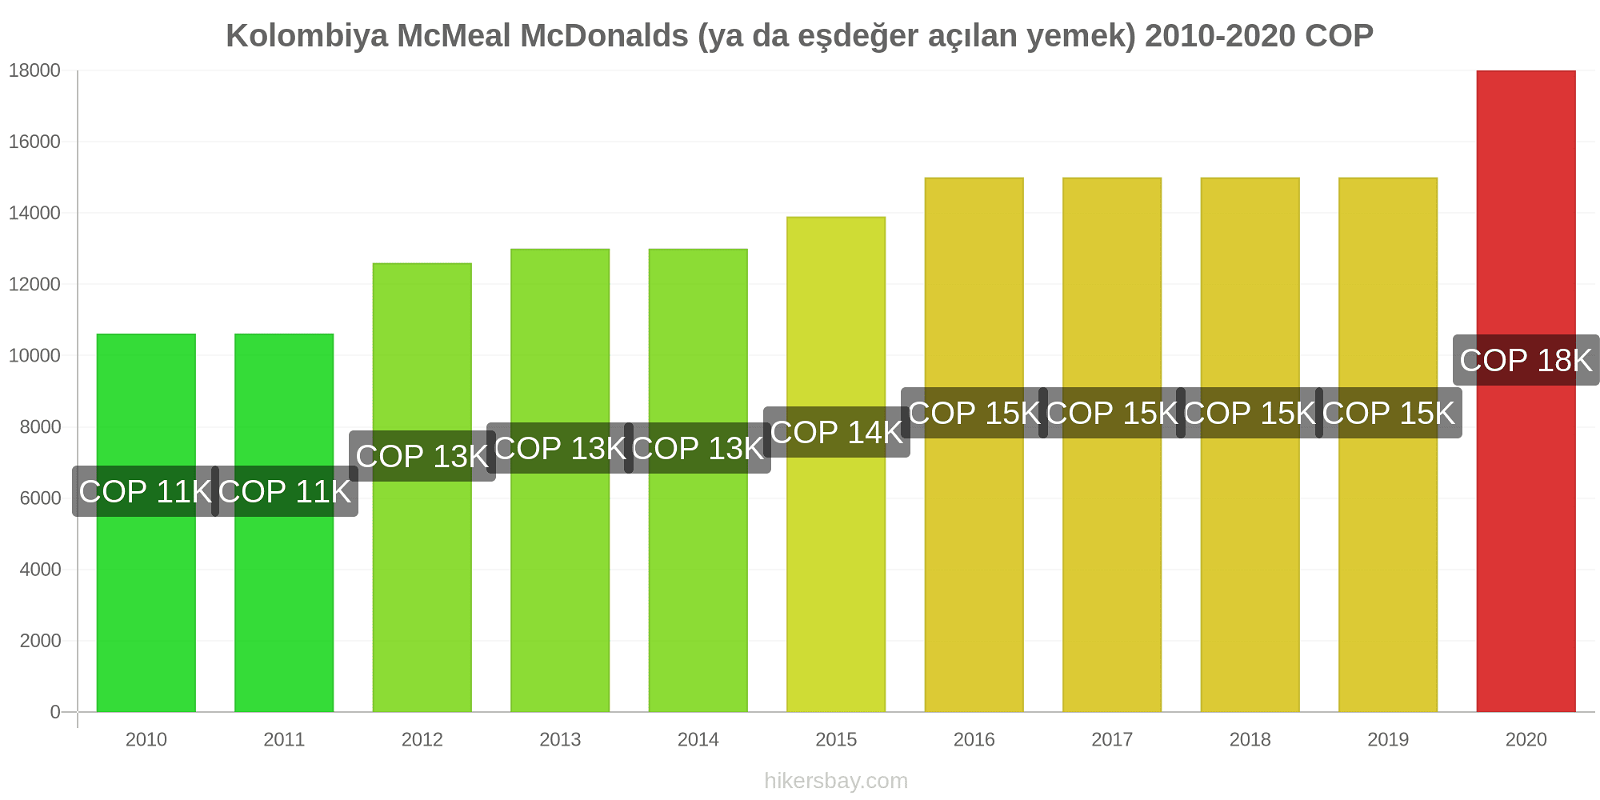 Kolombiya fiyat değişiklikleri McMeal McDonalds (ya da eşdeğer açılan yemek) hikersbay.com